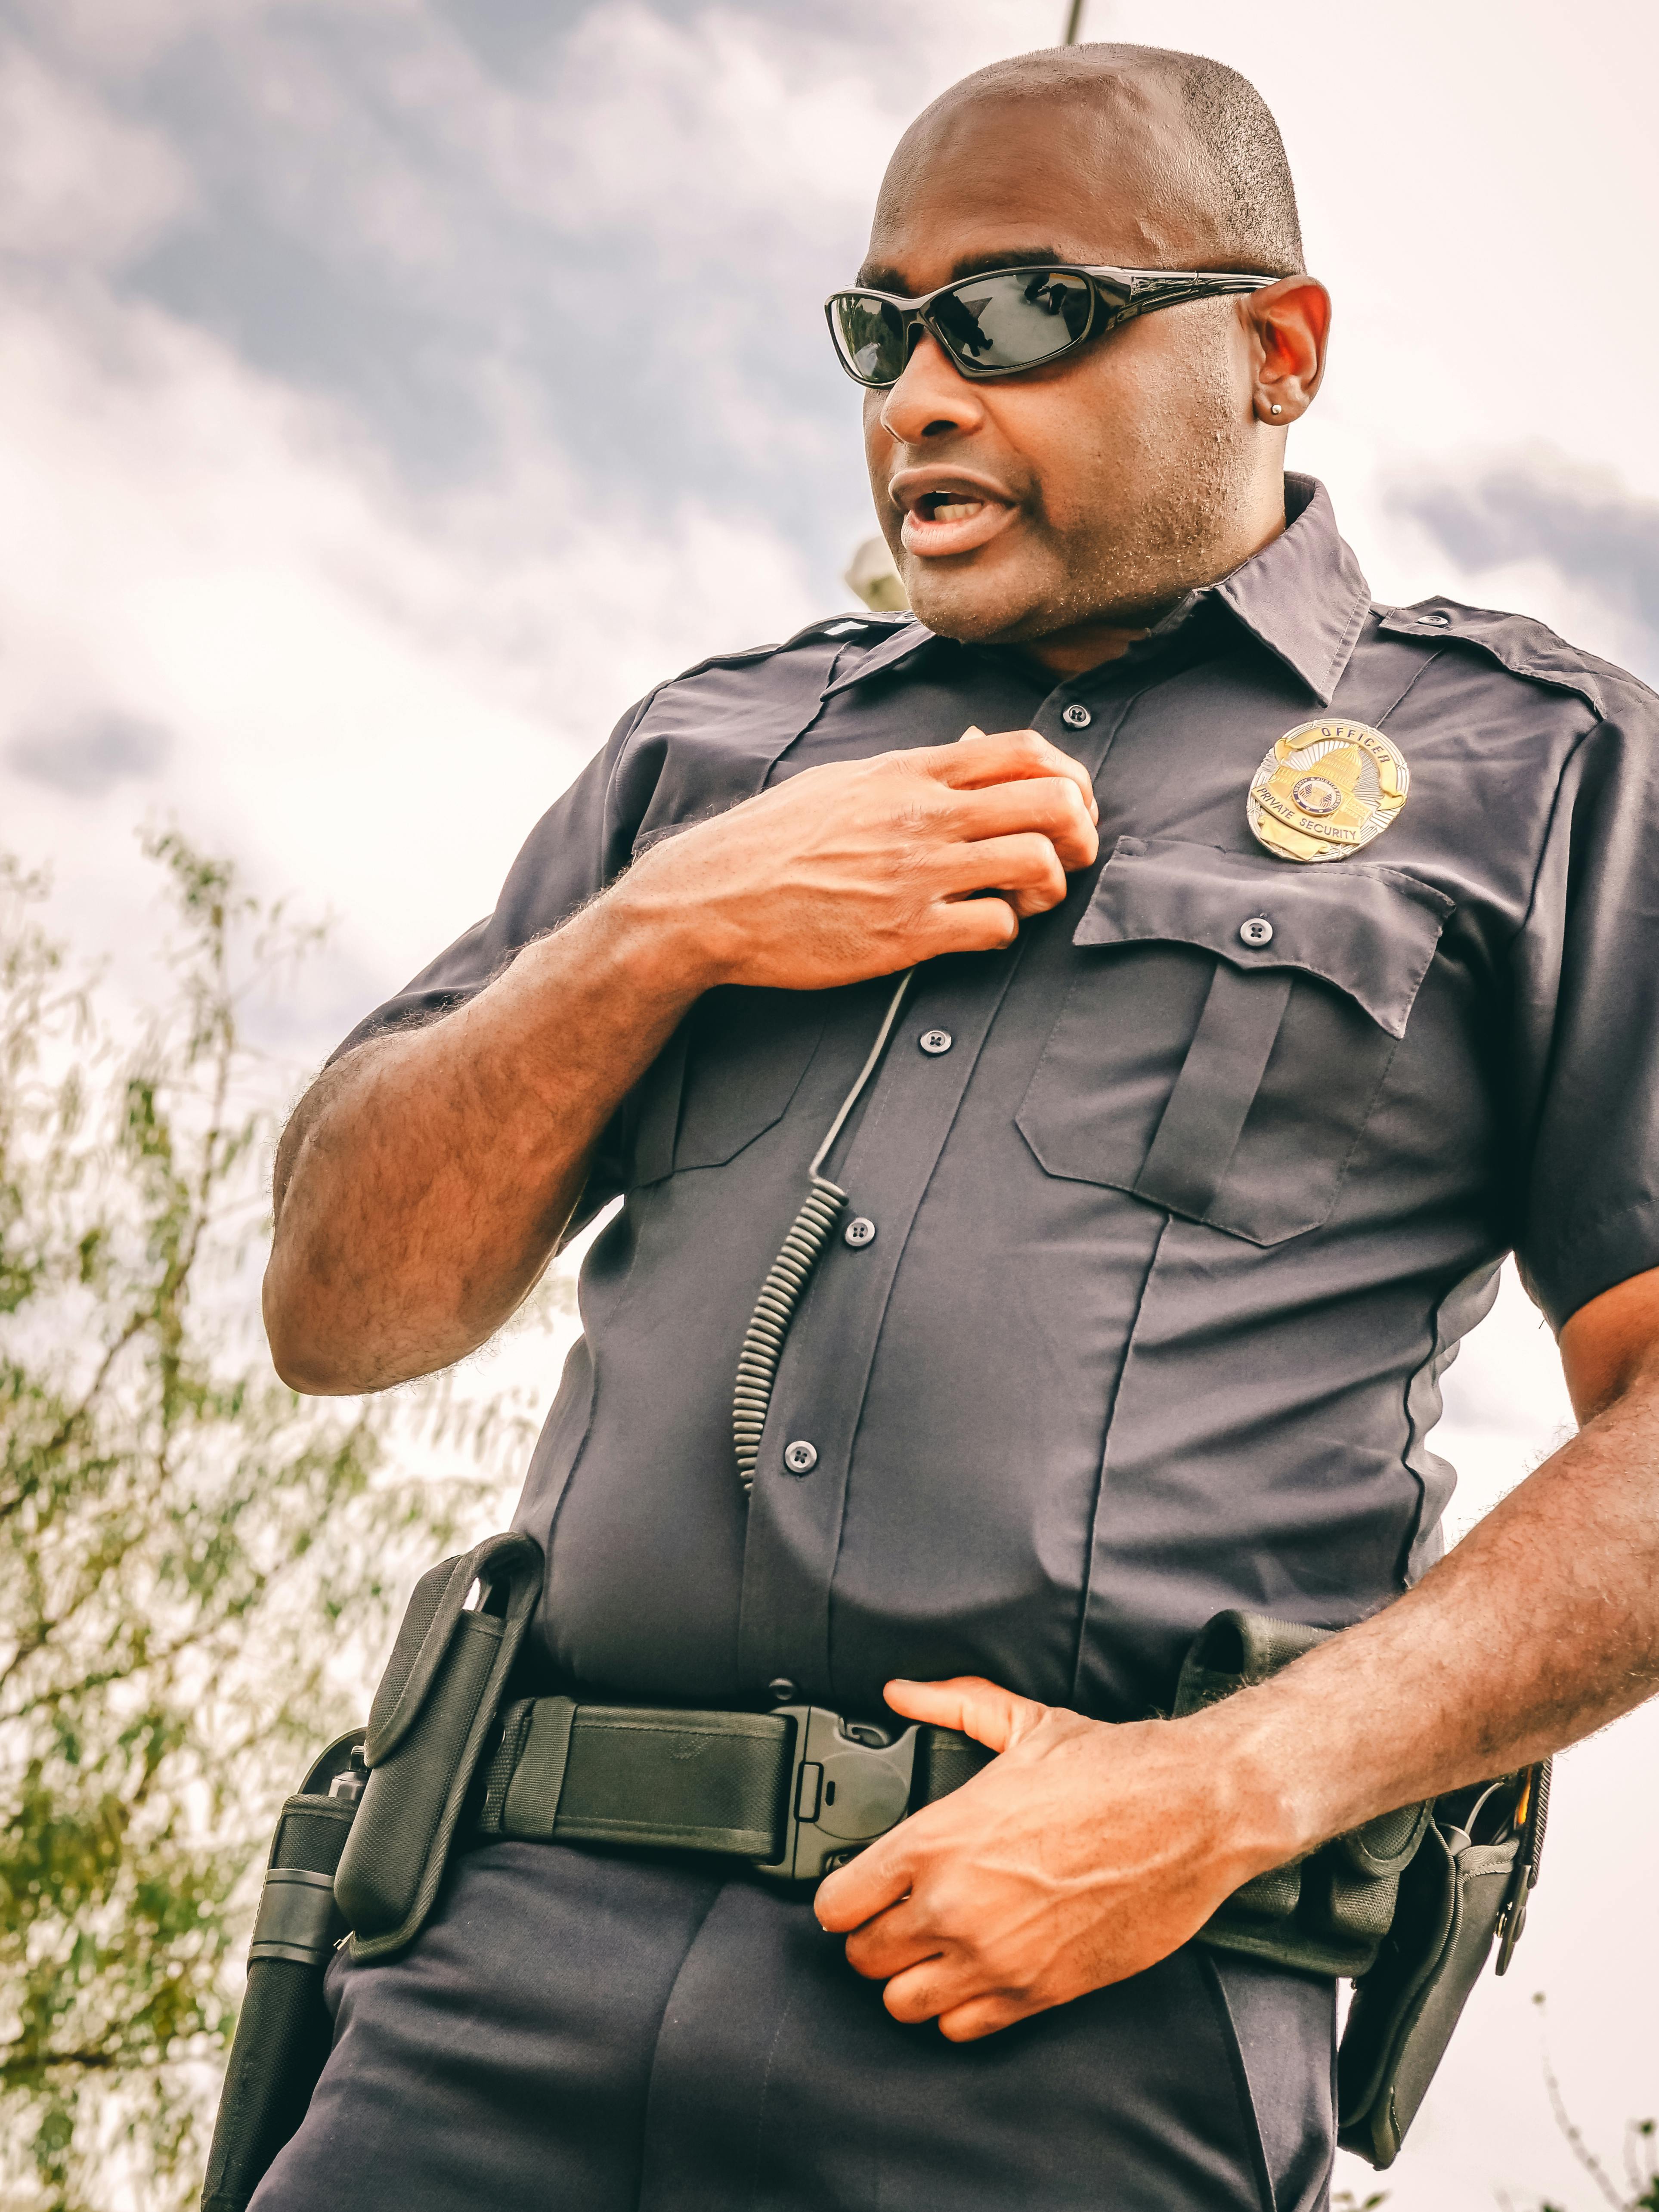 Un agente de policía hablando por su walkie-talkie | Fuente: Pexels